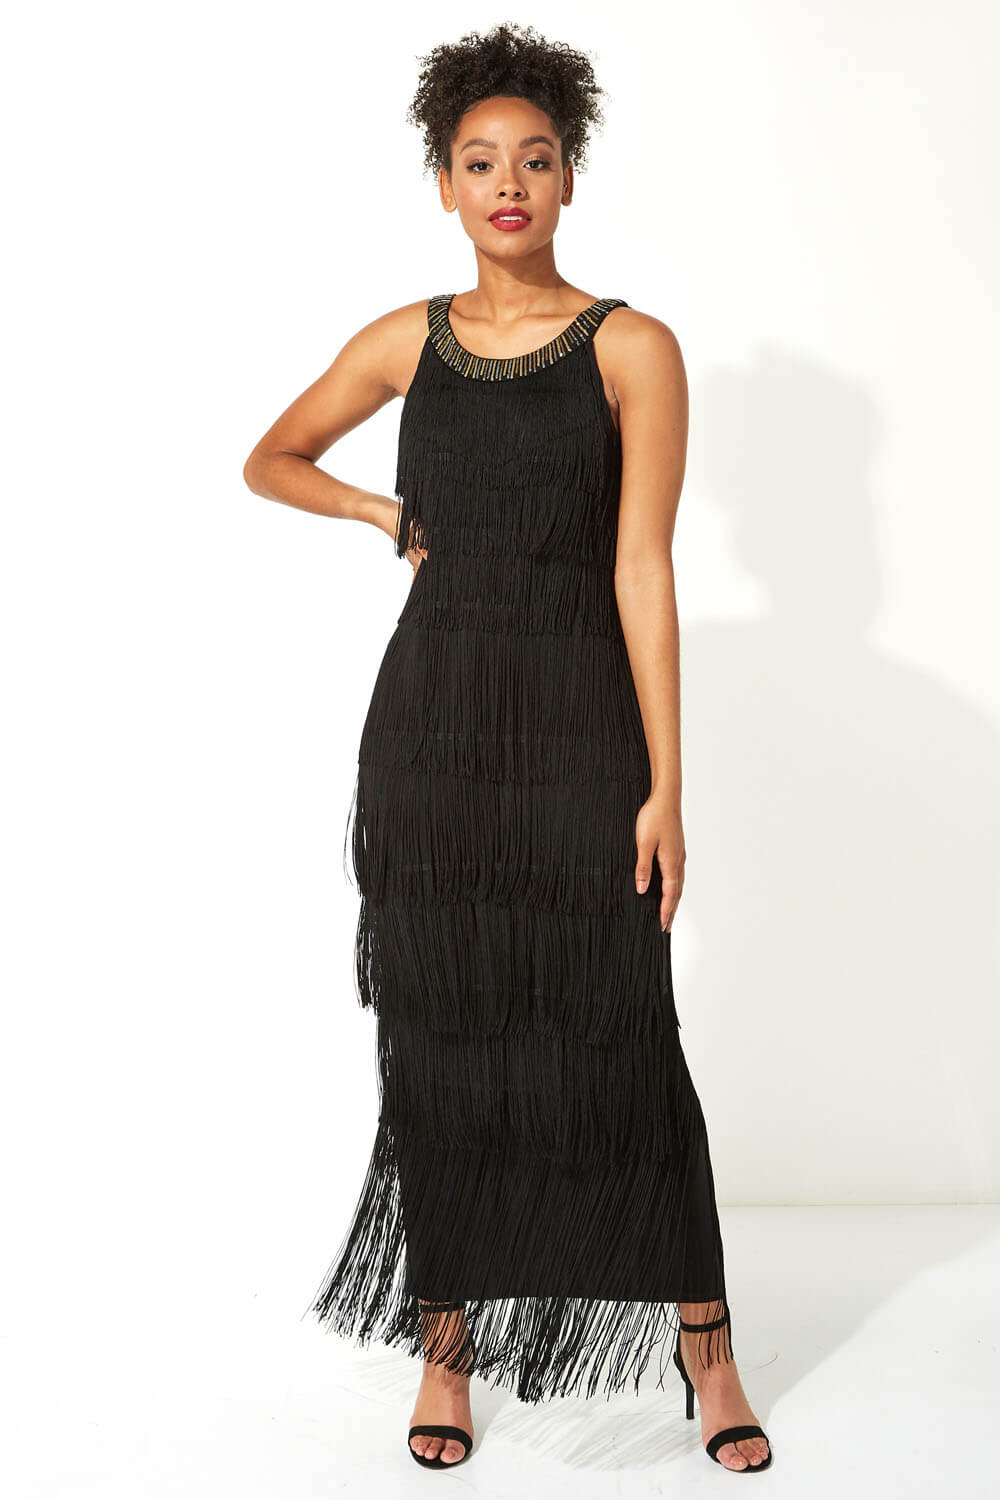 Black Sequin Neckband Fringe Maxi Dress, Image 2 of 4